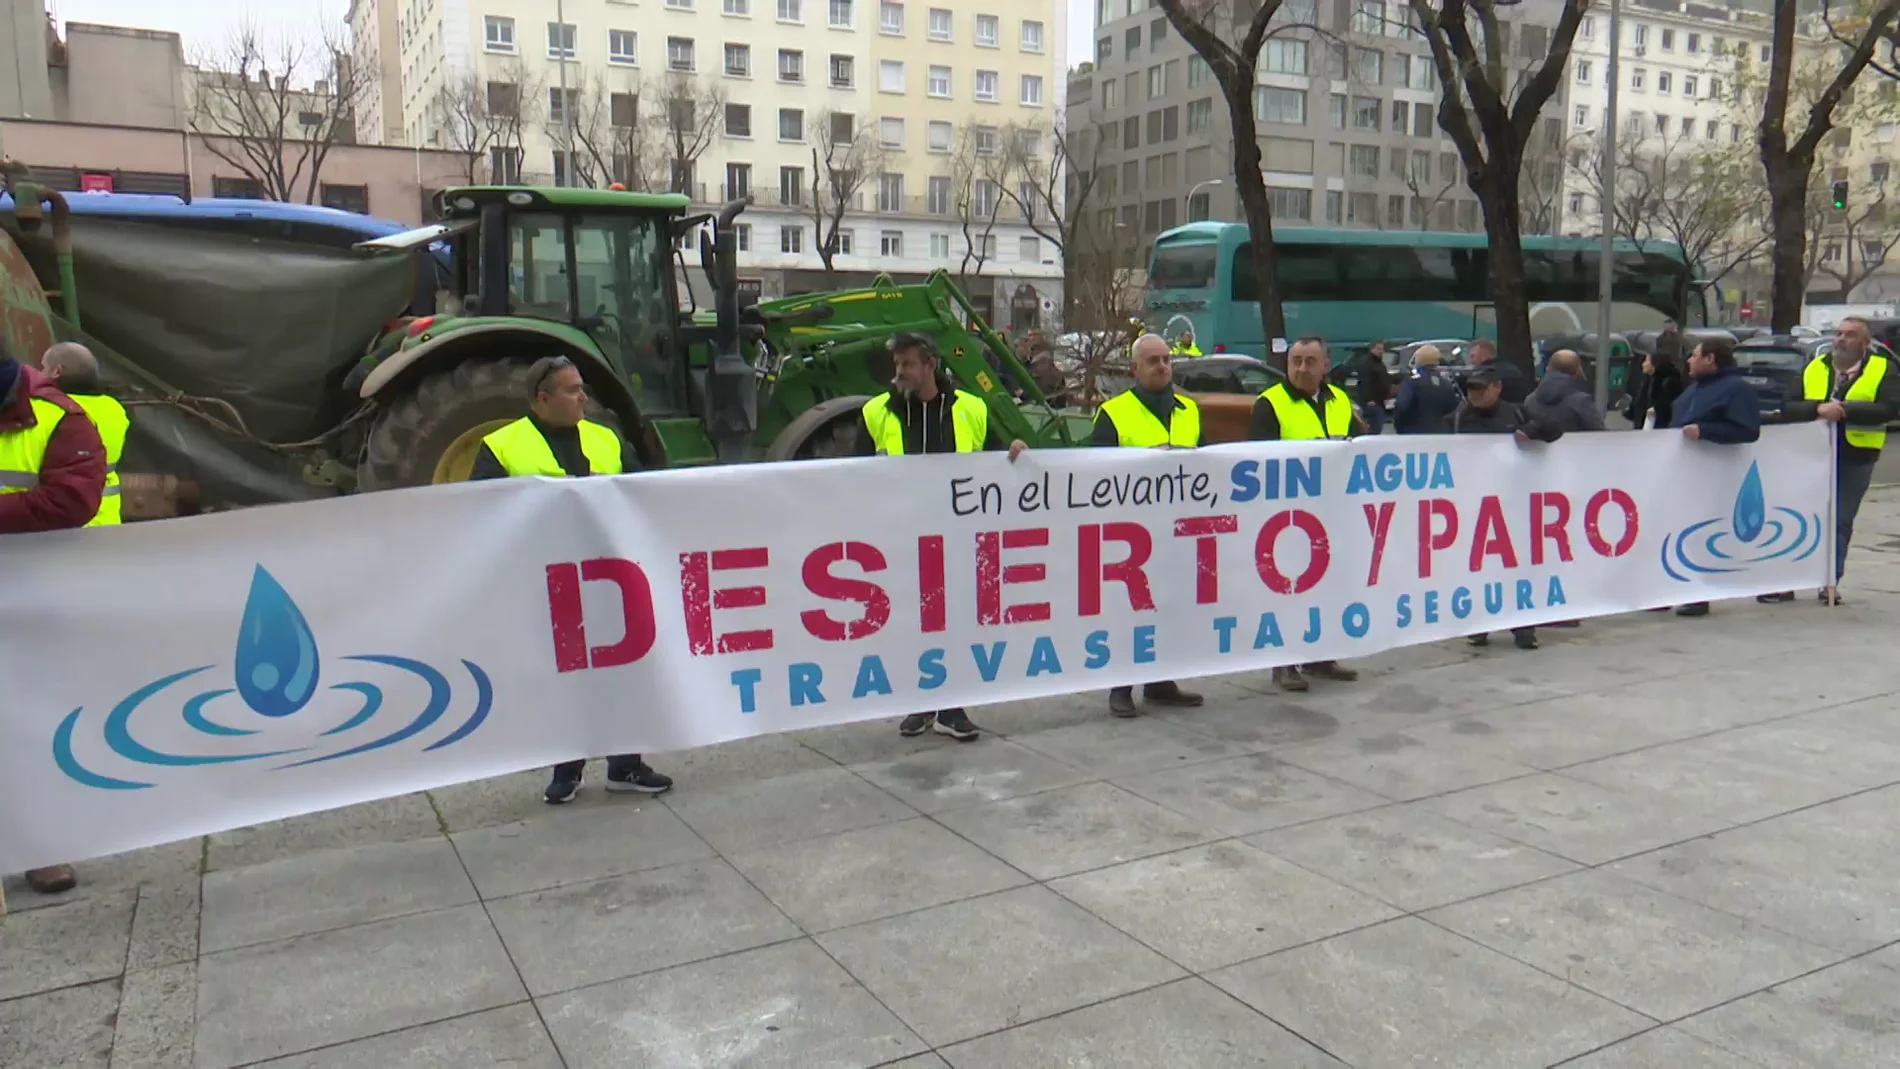 Protesta trasvase Tajo-Segura